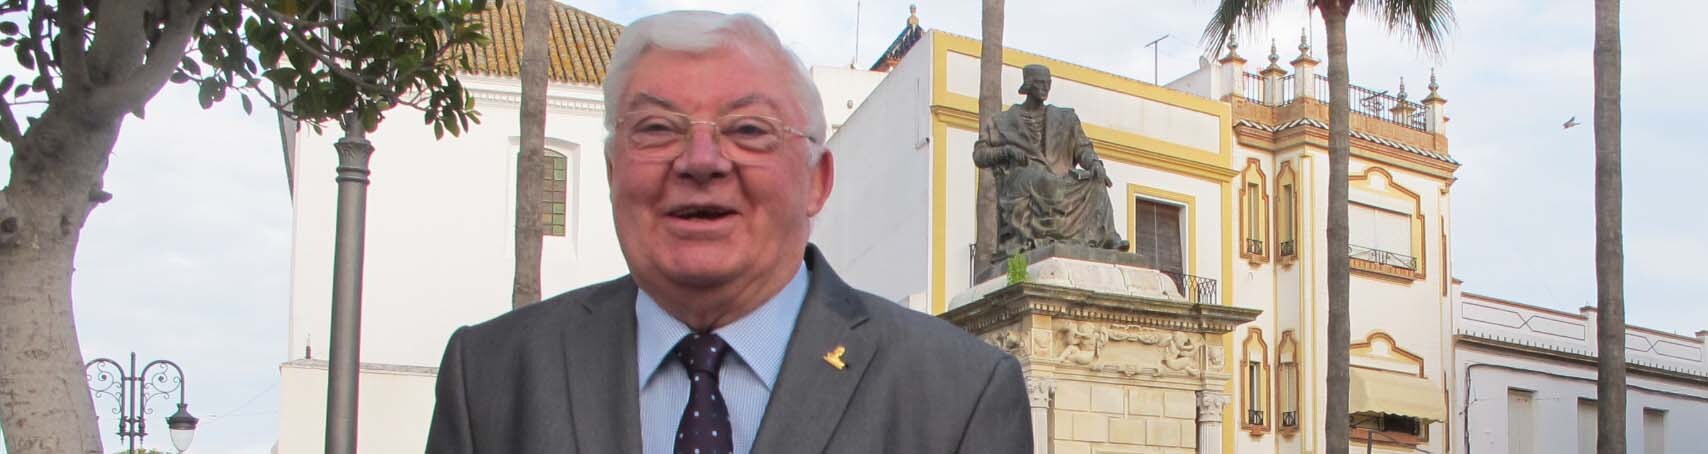 El presidente de la Fundación V Centenario Elio Antonio de Nebrija junto a la estatua del humanista en el centro de Lebrija